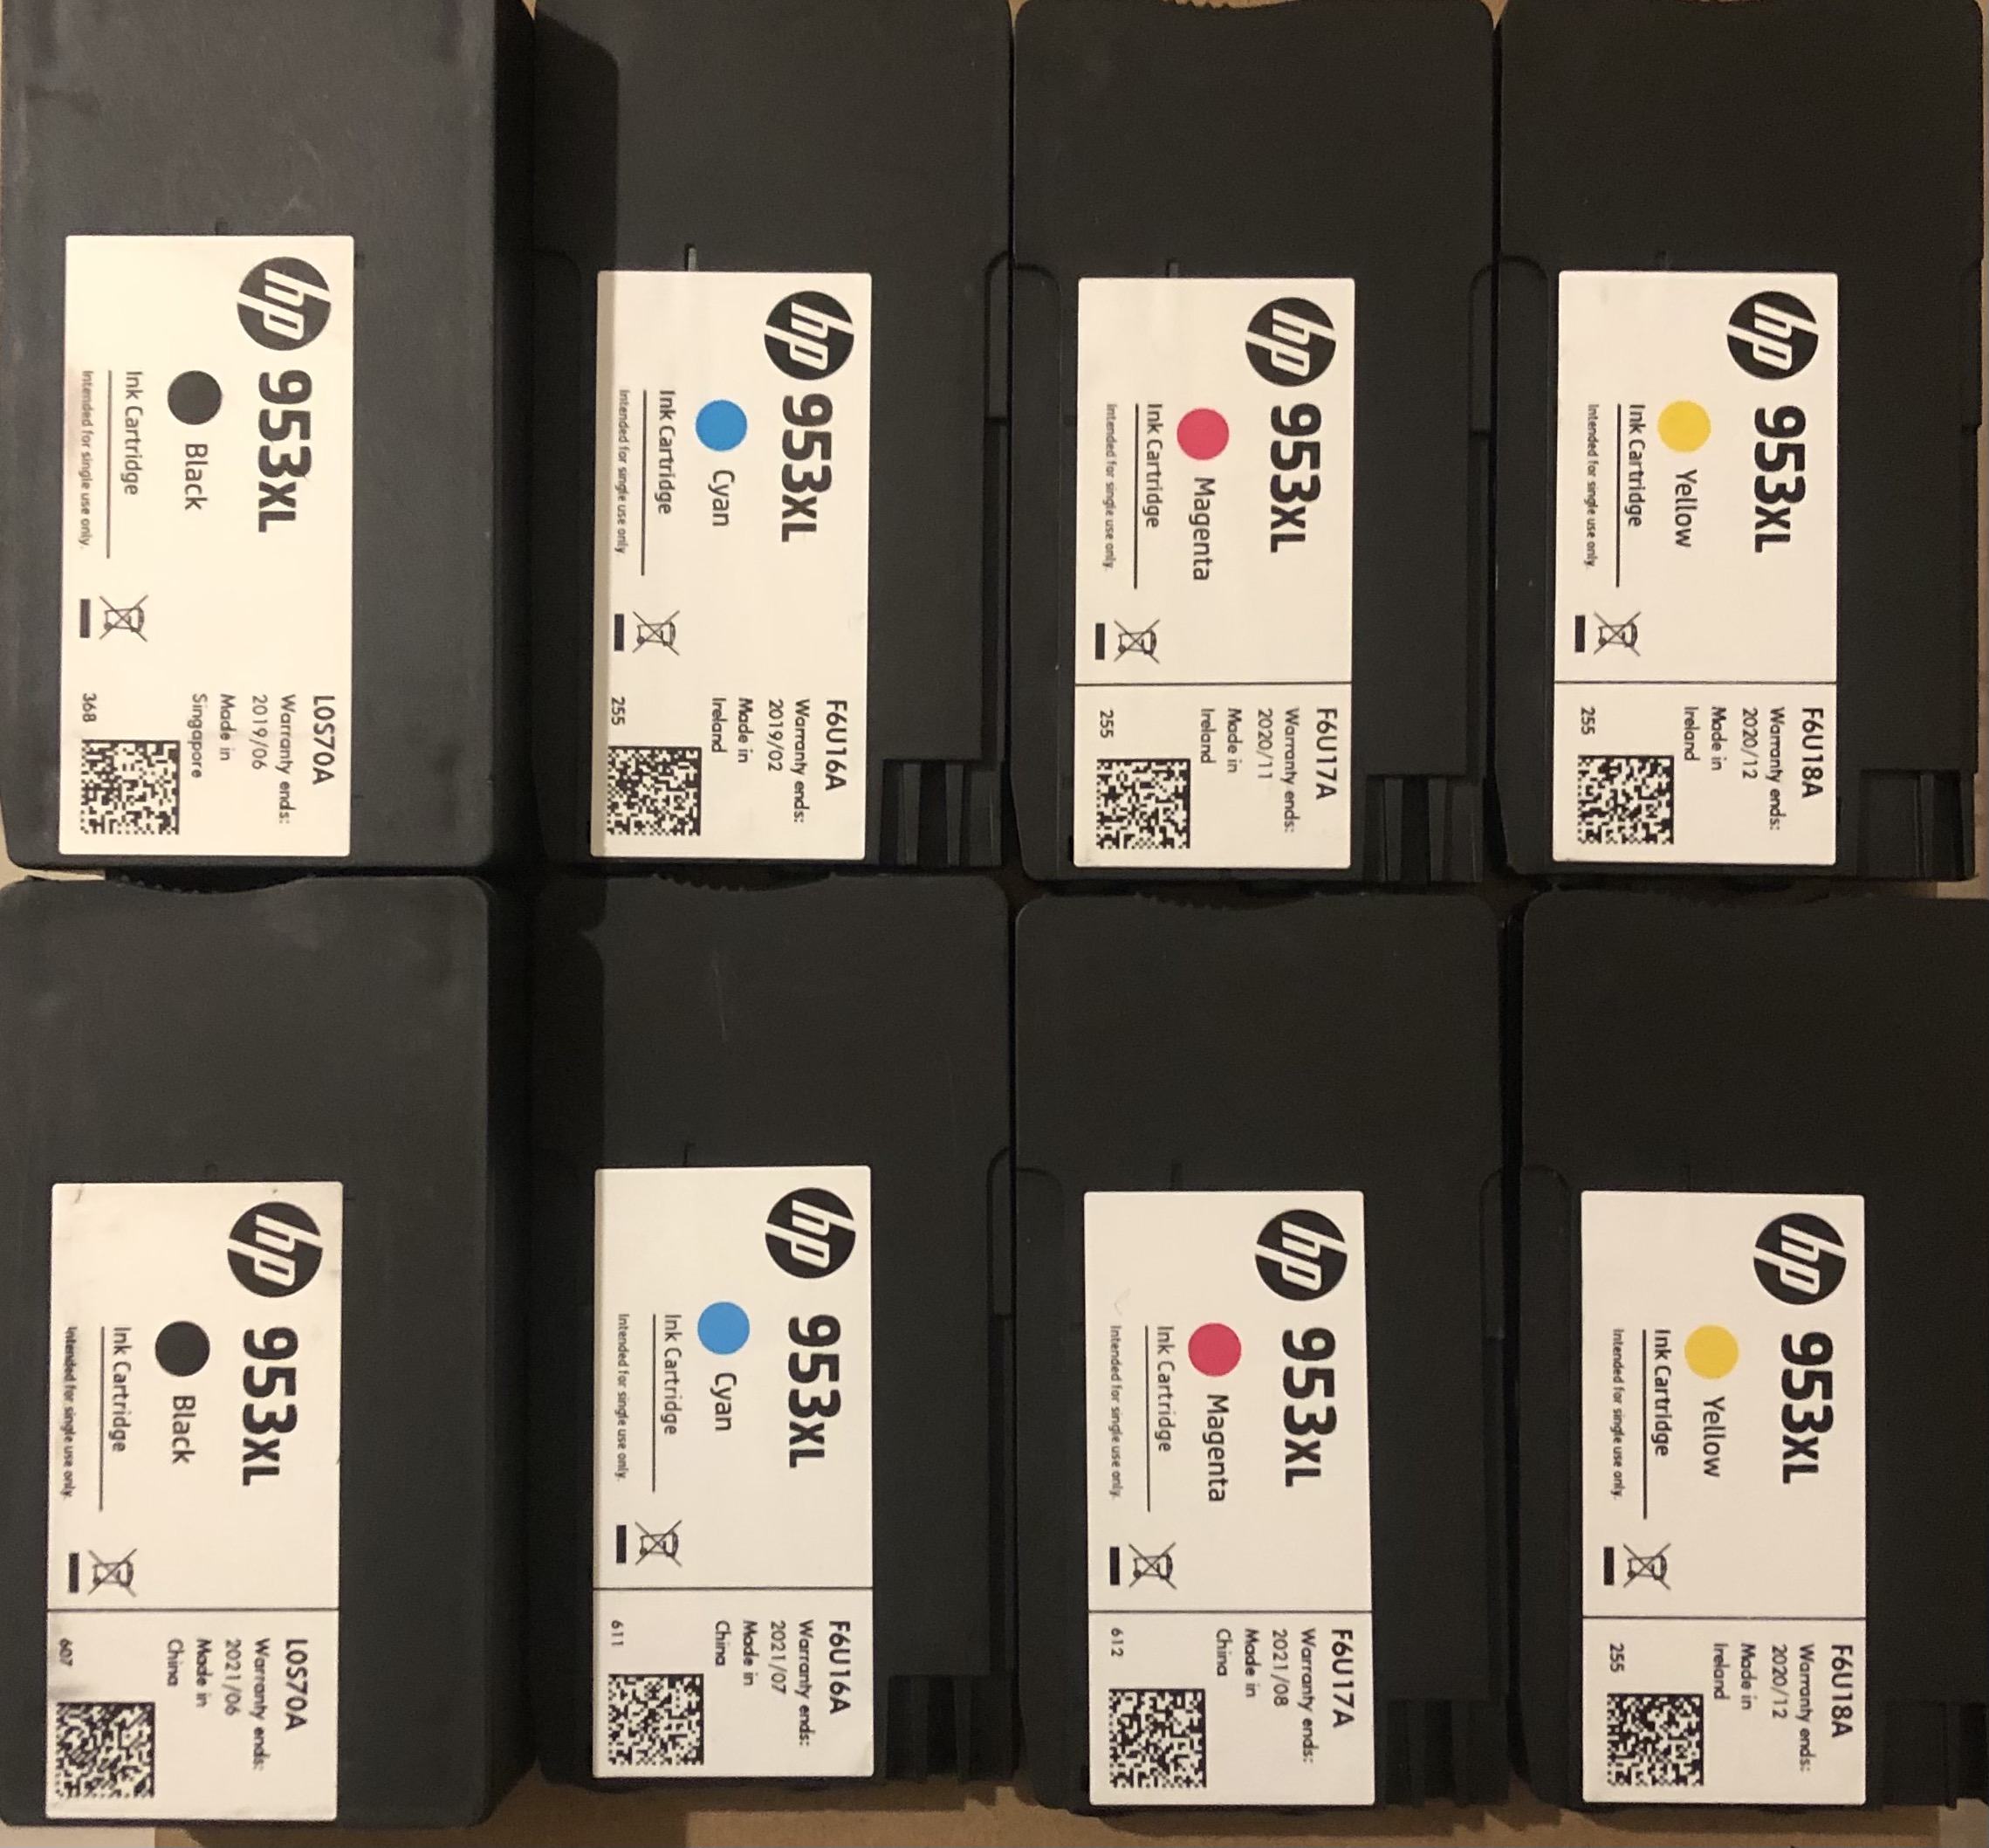 2X HP 953XL Full Sets- 2xBlack, 2xCyan, 2xMagenta, 2xYellow Ink Cartridges